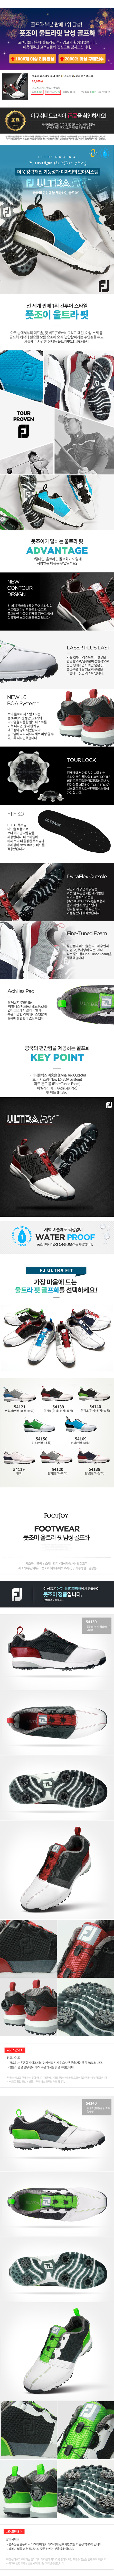 footjoy_ultra_fit_18.jpg